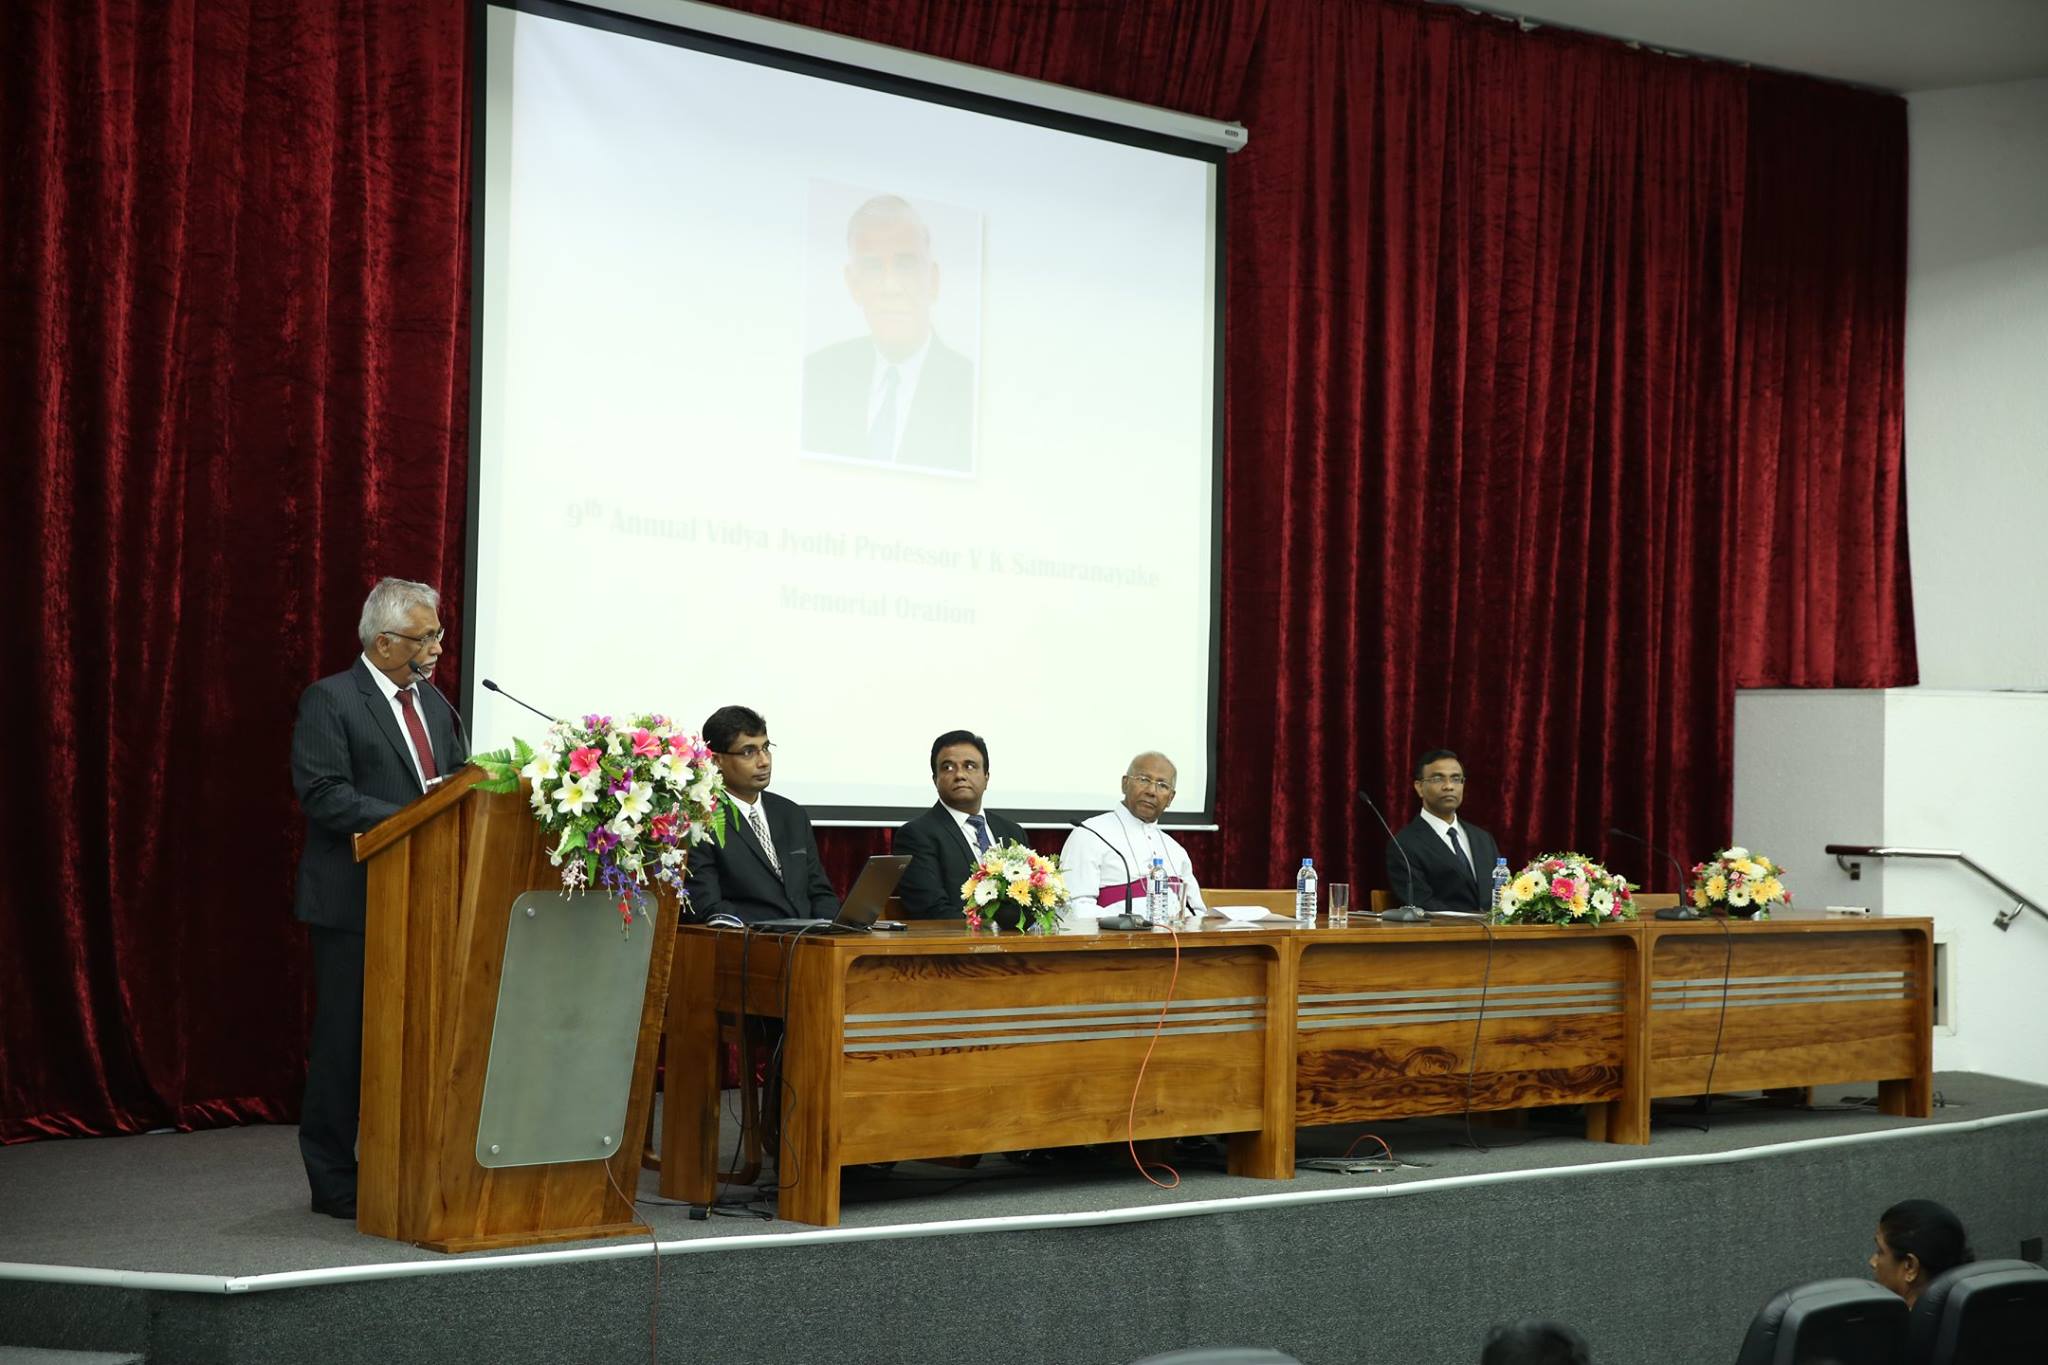 9th Annual Vidya Jyothi Prof. V K Samaranayake Memorial Oration